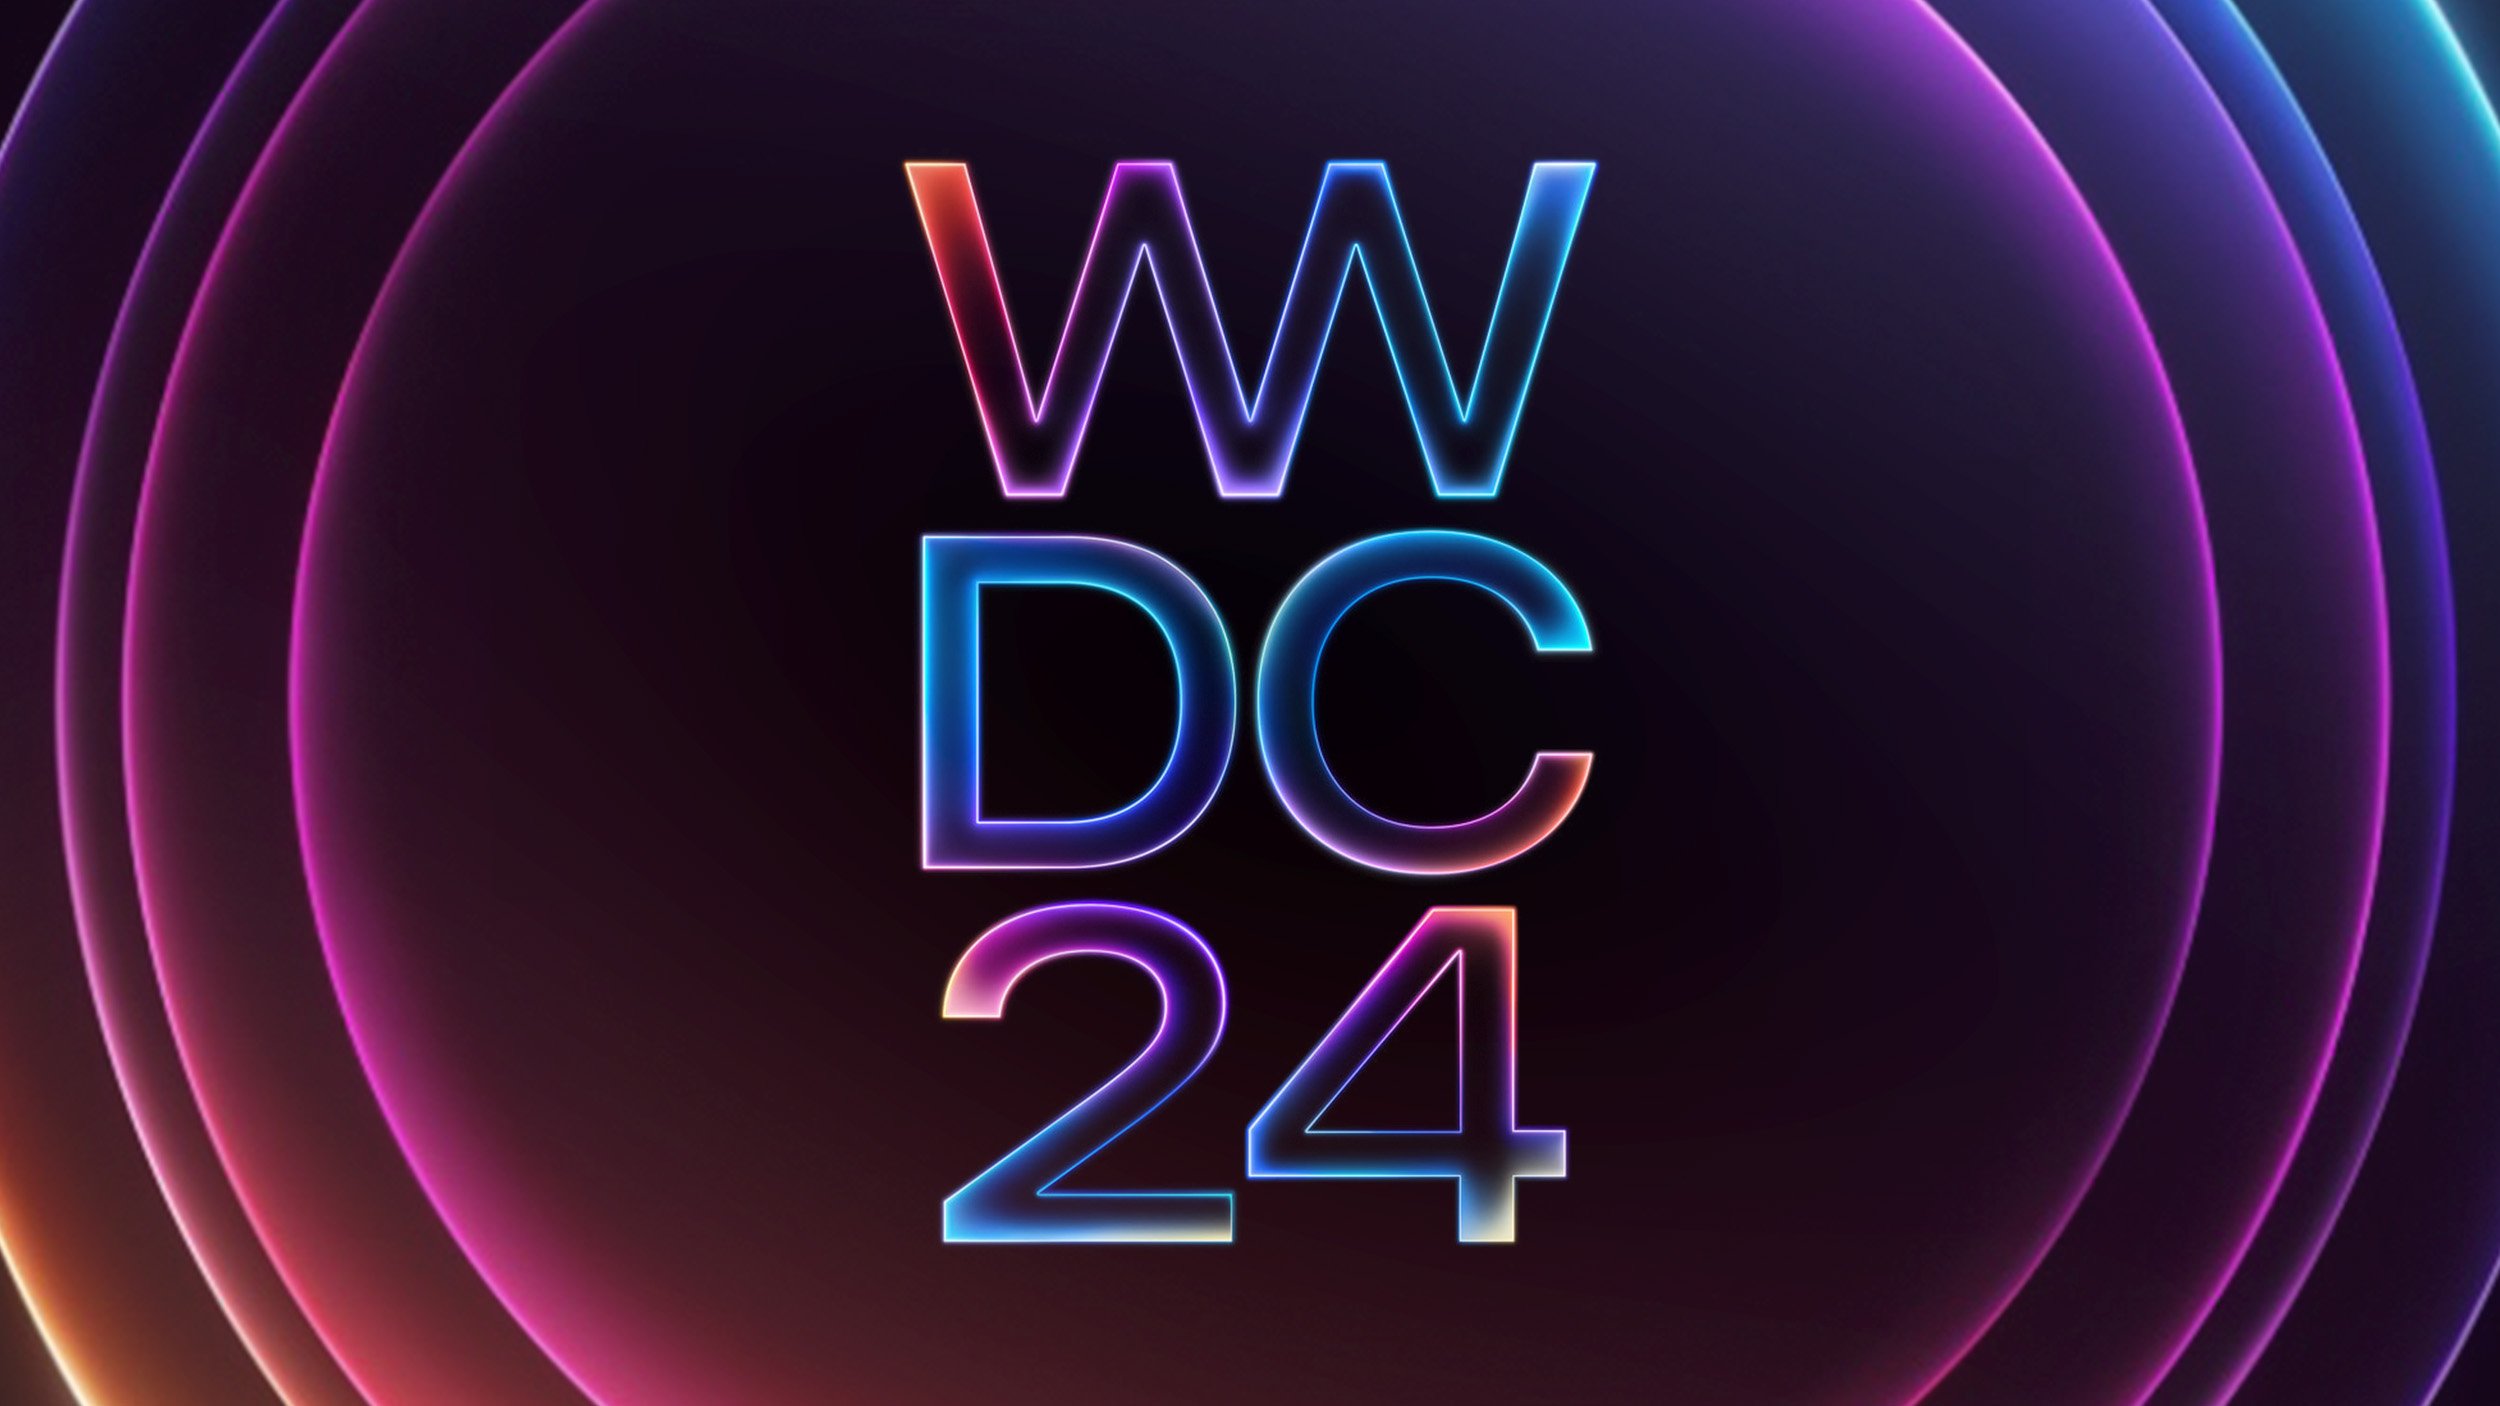 Logo WWDC 24 na ciemnym tle z kolorowymi świetlnymi pierścieniami.